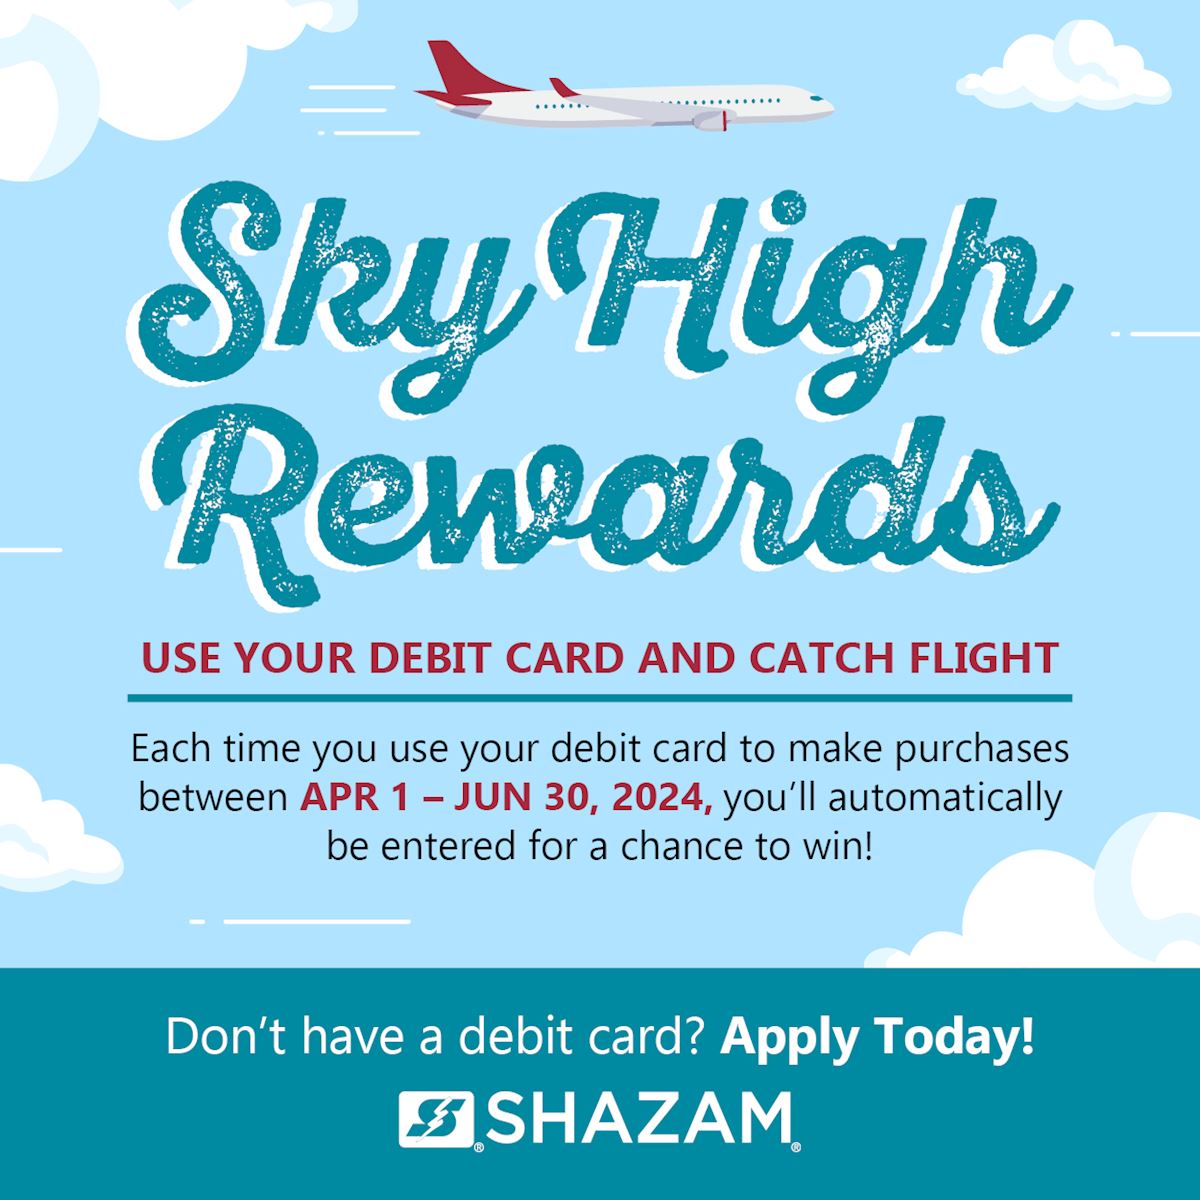 Shazam Sky High Rewards campaign image